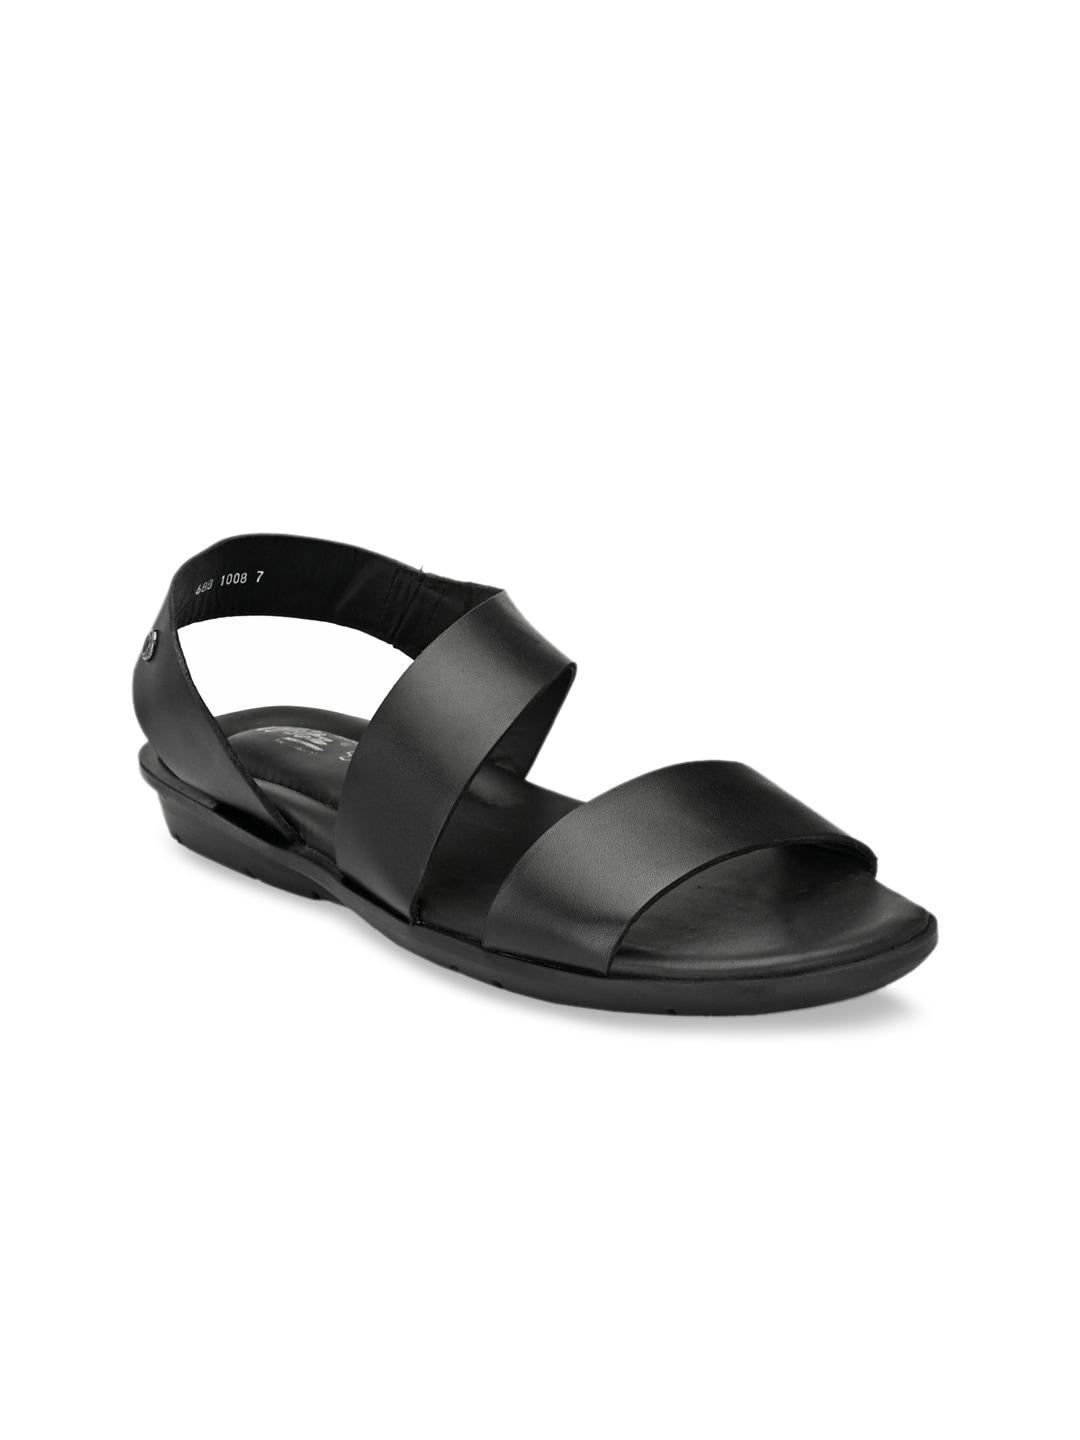 hitz men black solid leather comfort sandals